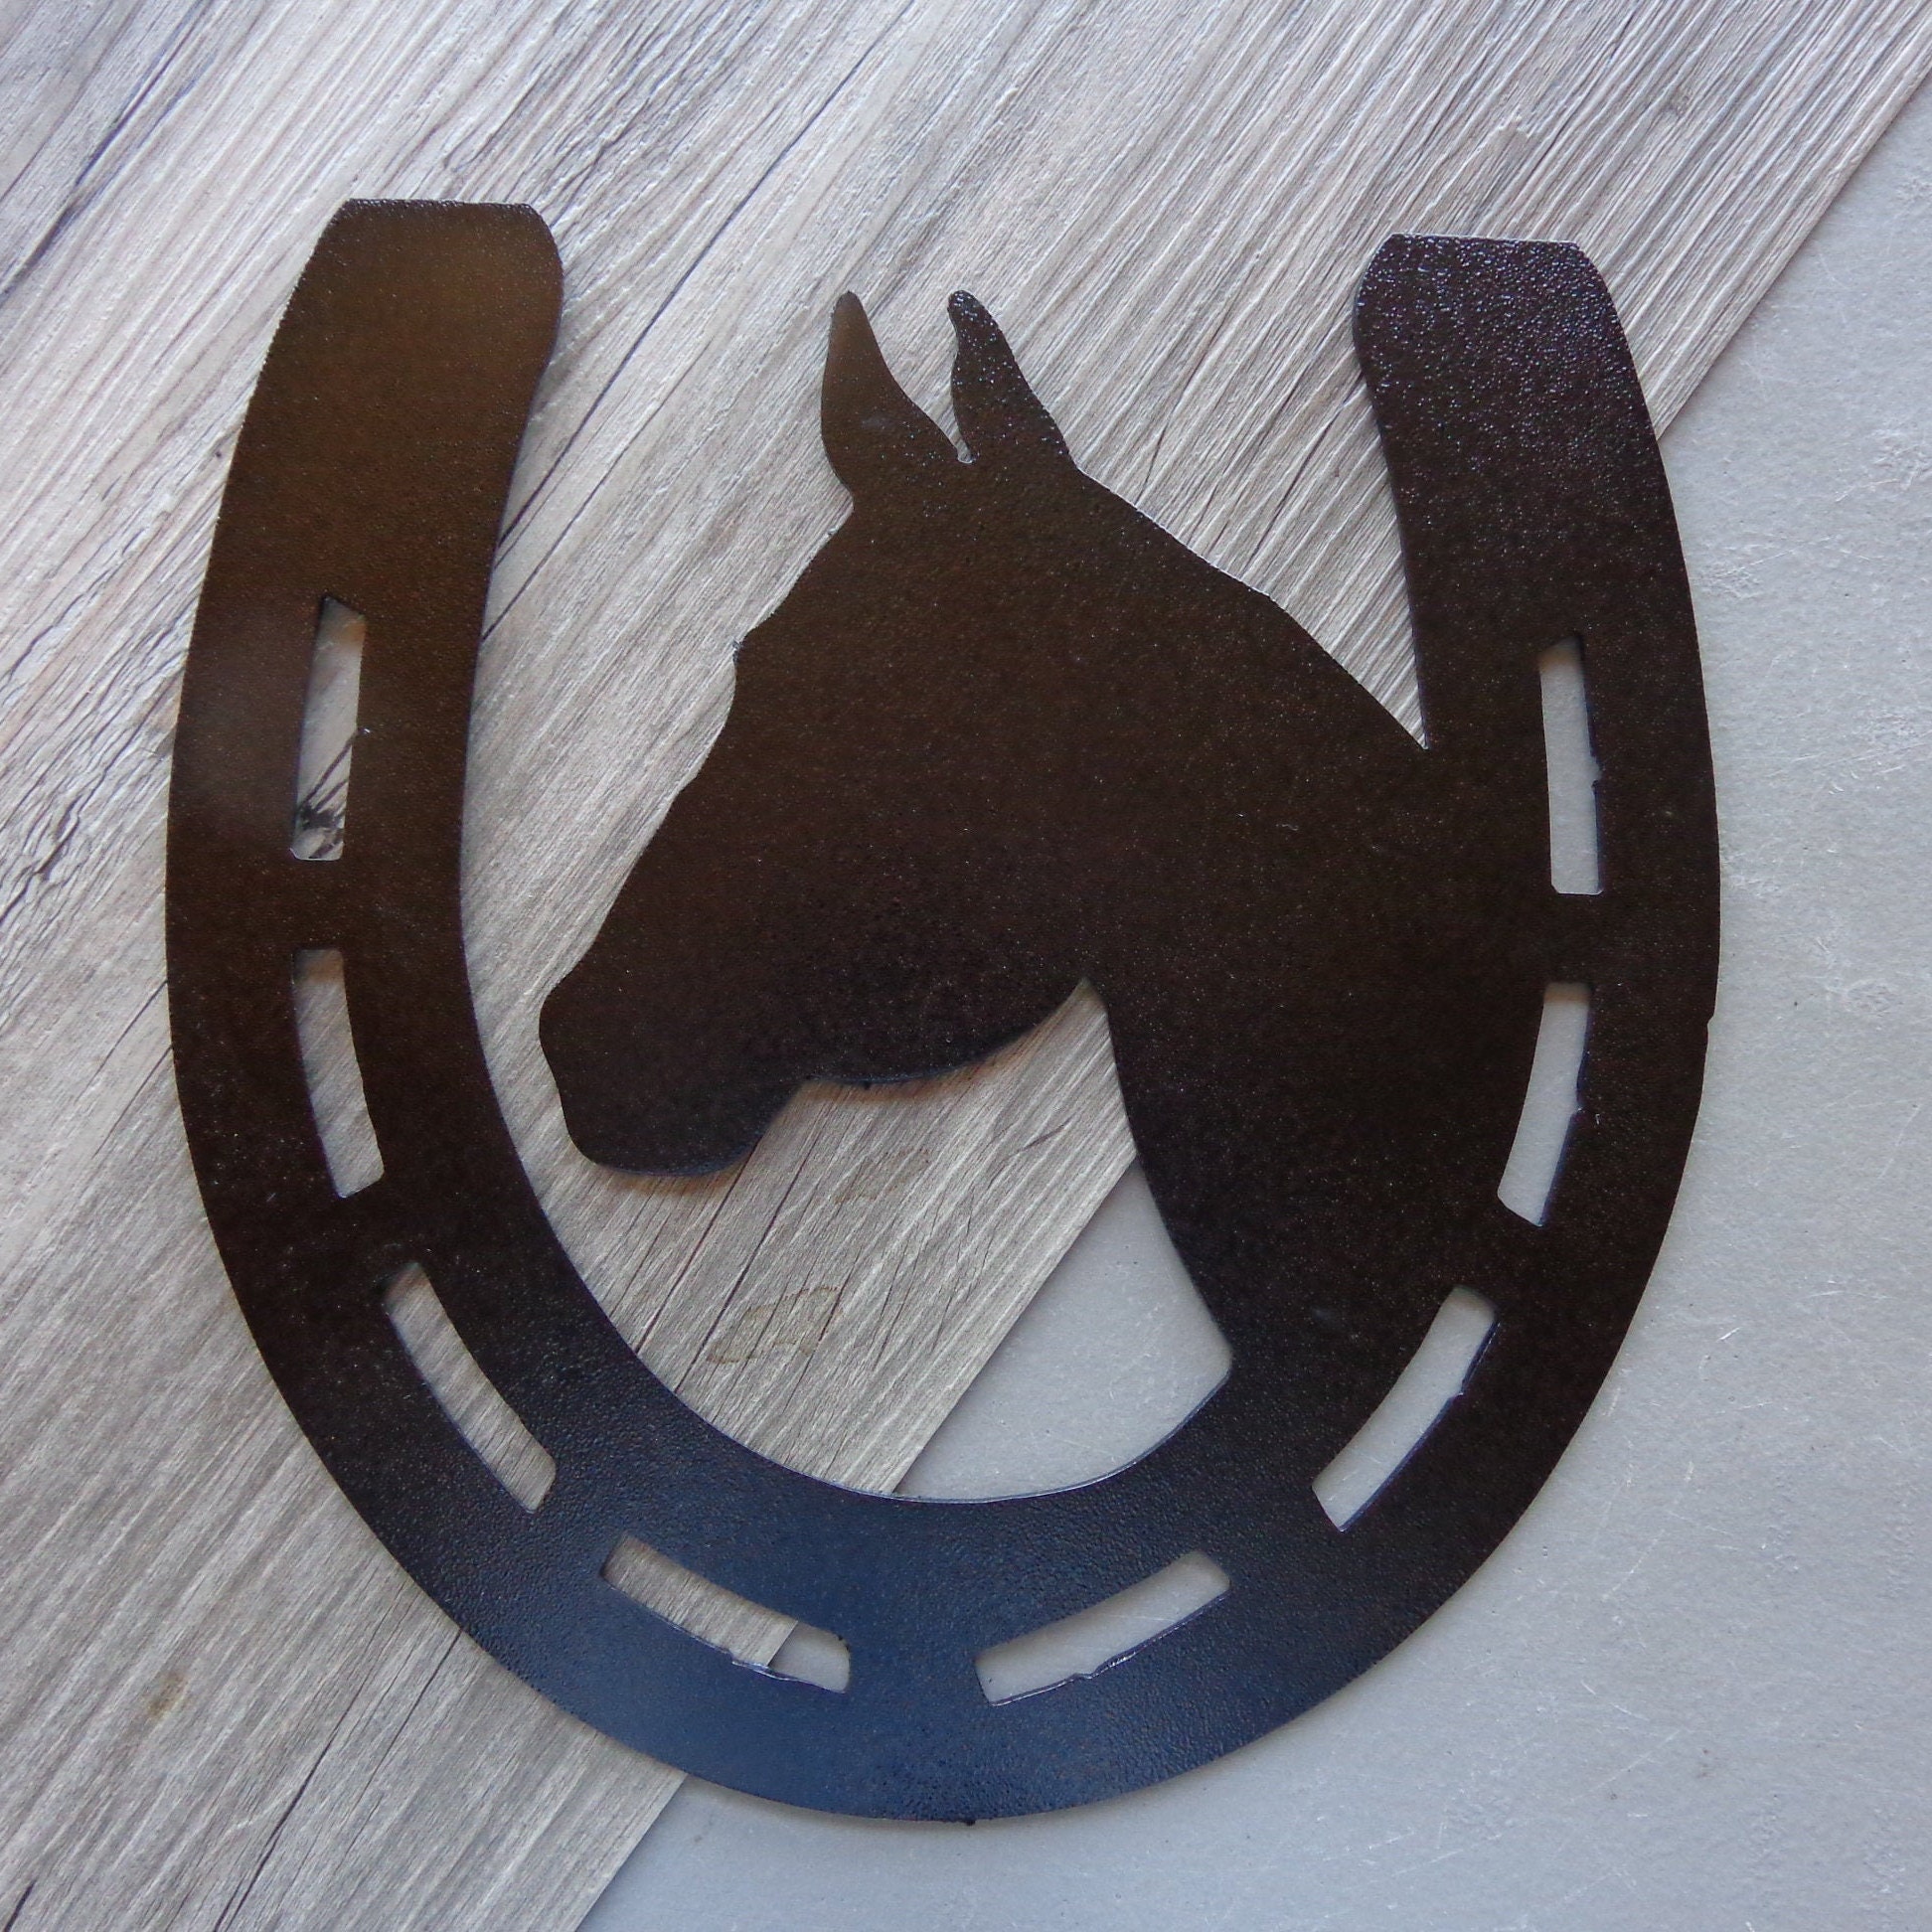 New Horseshoes Plasma Cut Metal Wall Art 10" W x 7-1/2" T Natural Steel Clear 